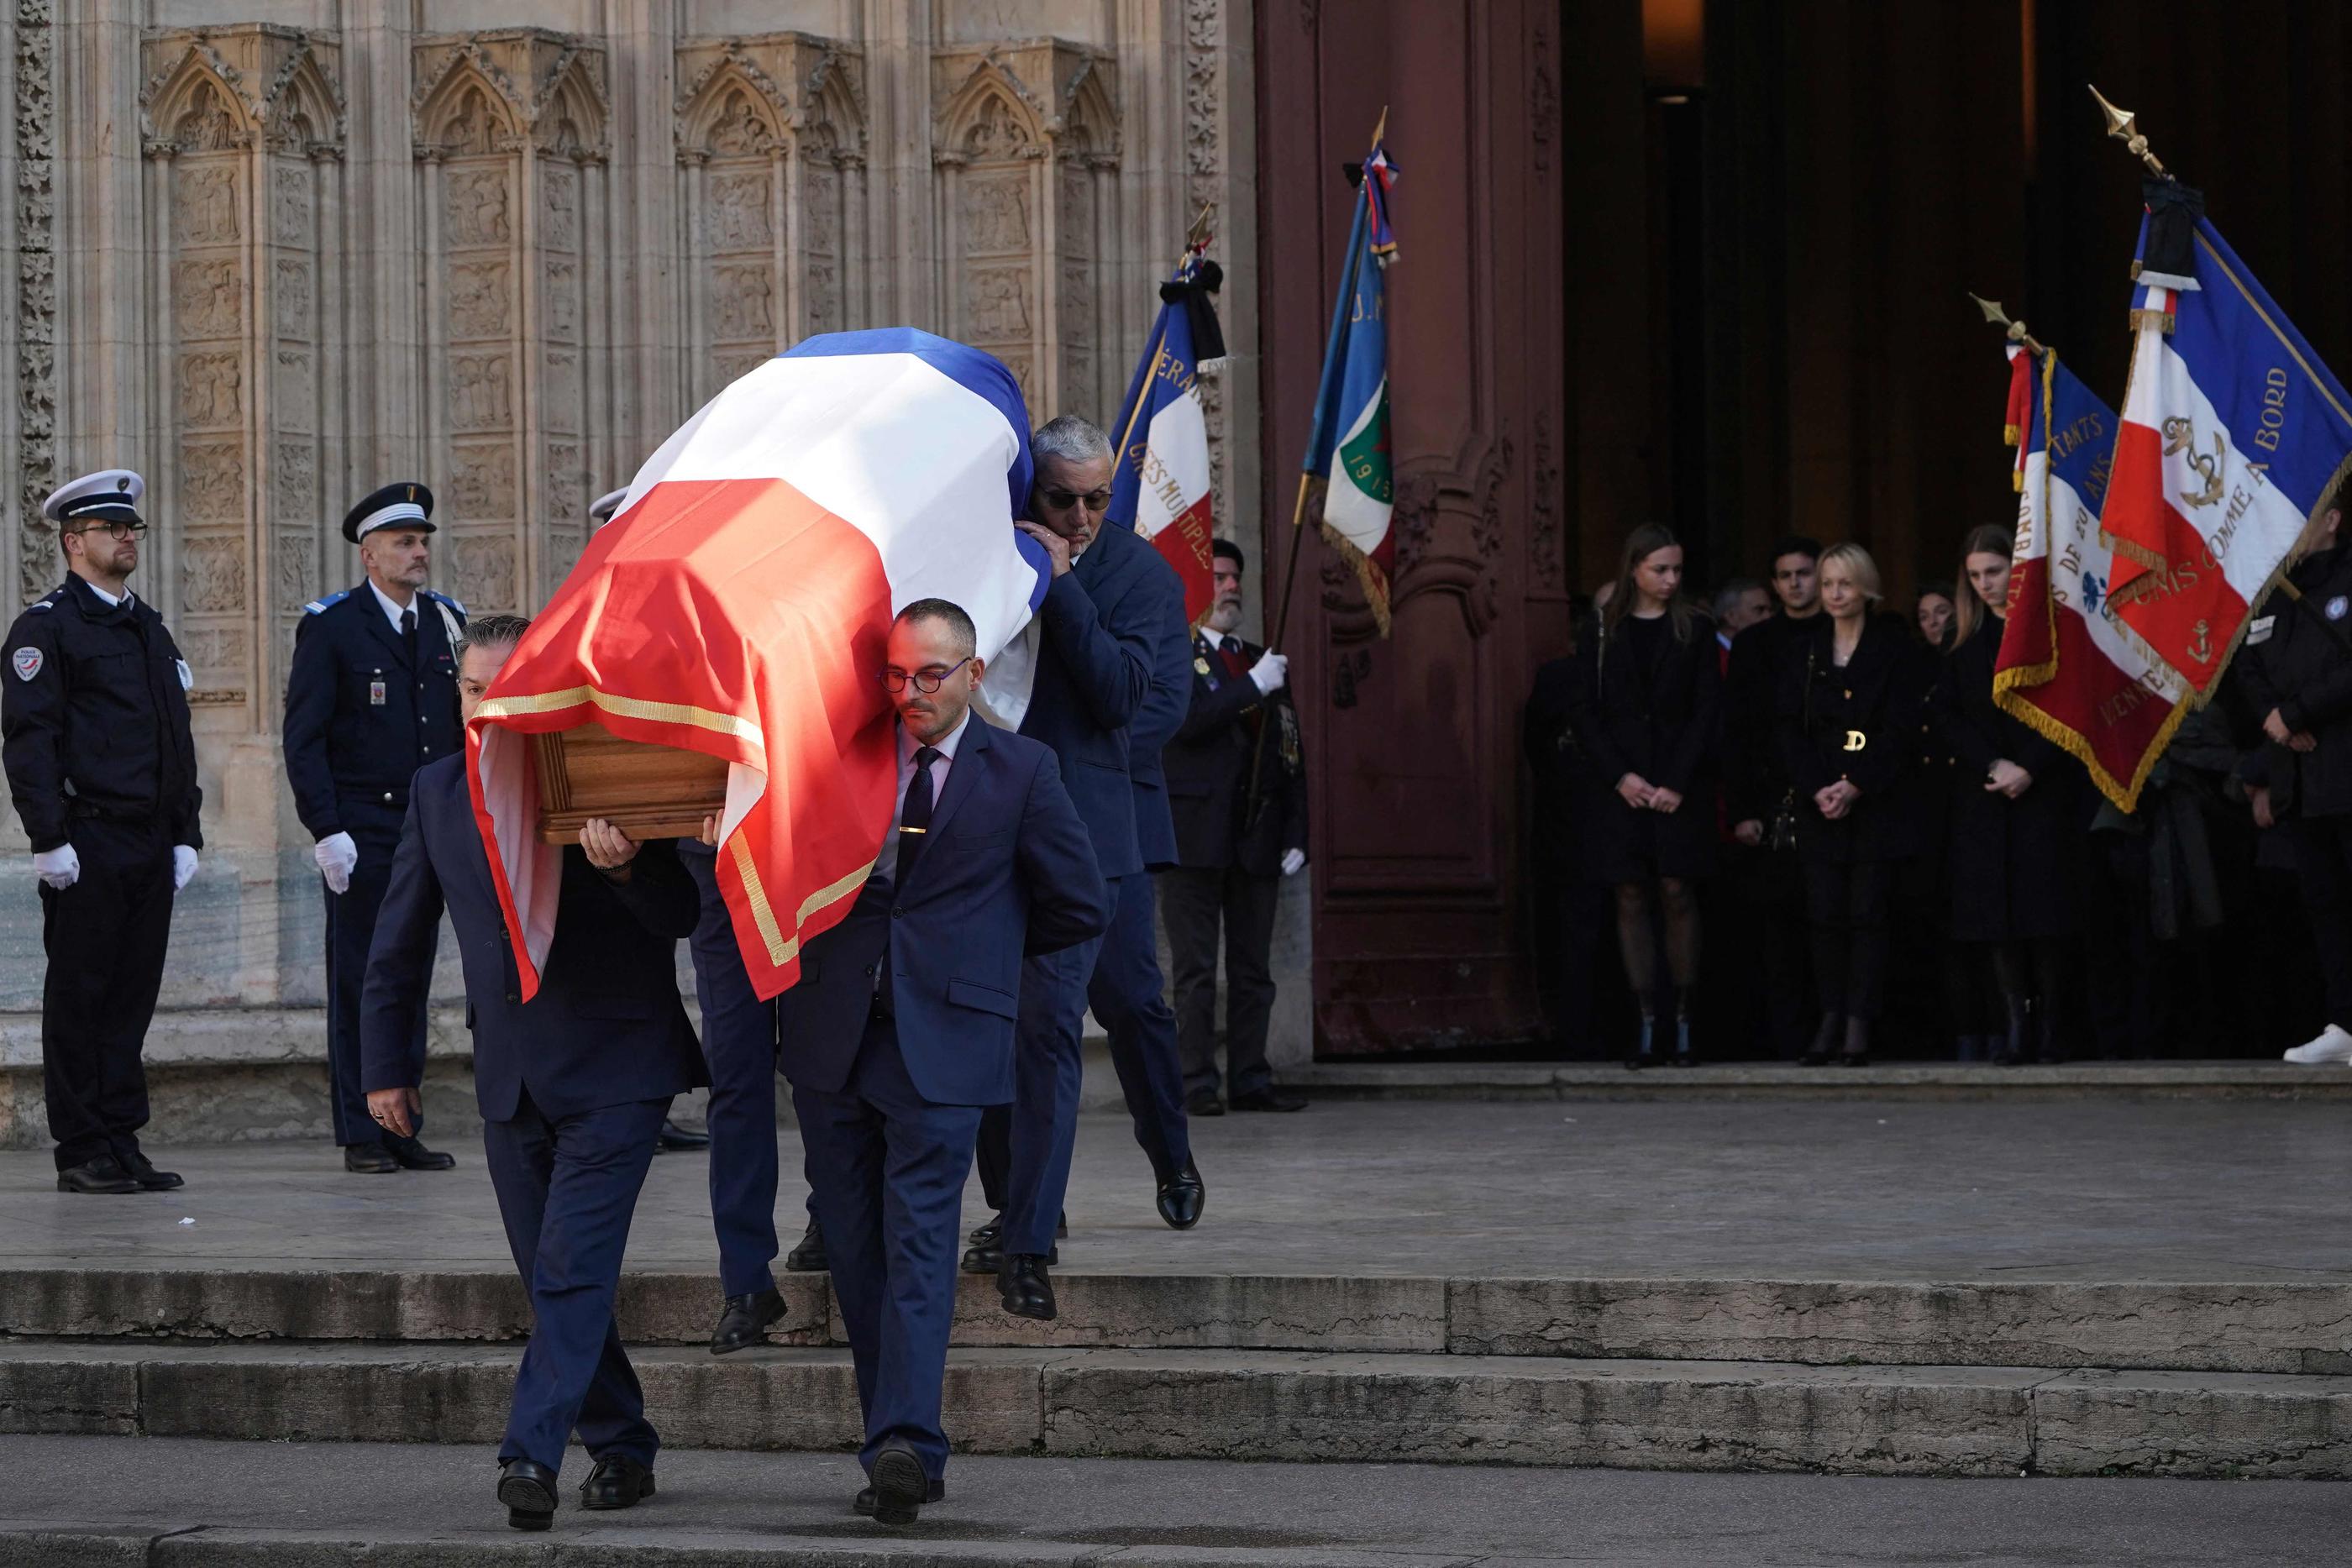 Le cercueil de Gérard Collomb quitte la cathédrale Saint-Jean de Lyon, ce mercredi midi. Laurent Cipriani/Pool via REUTERS